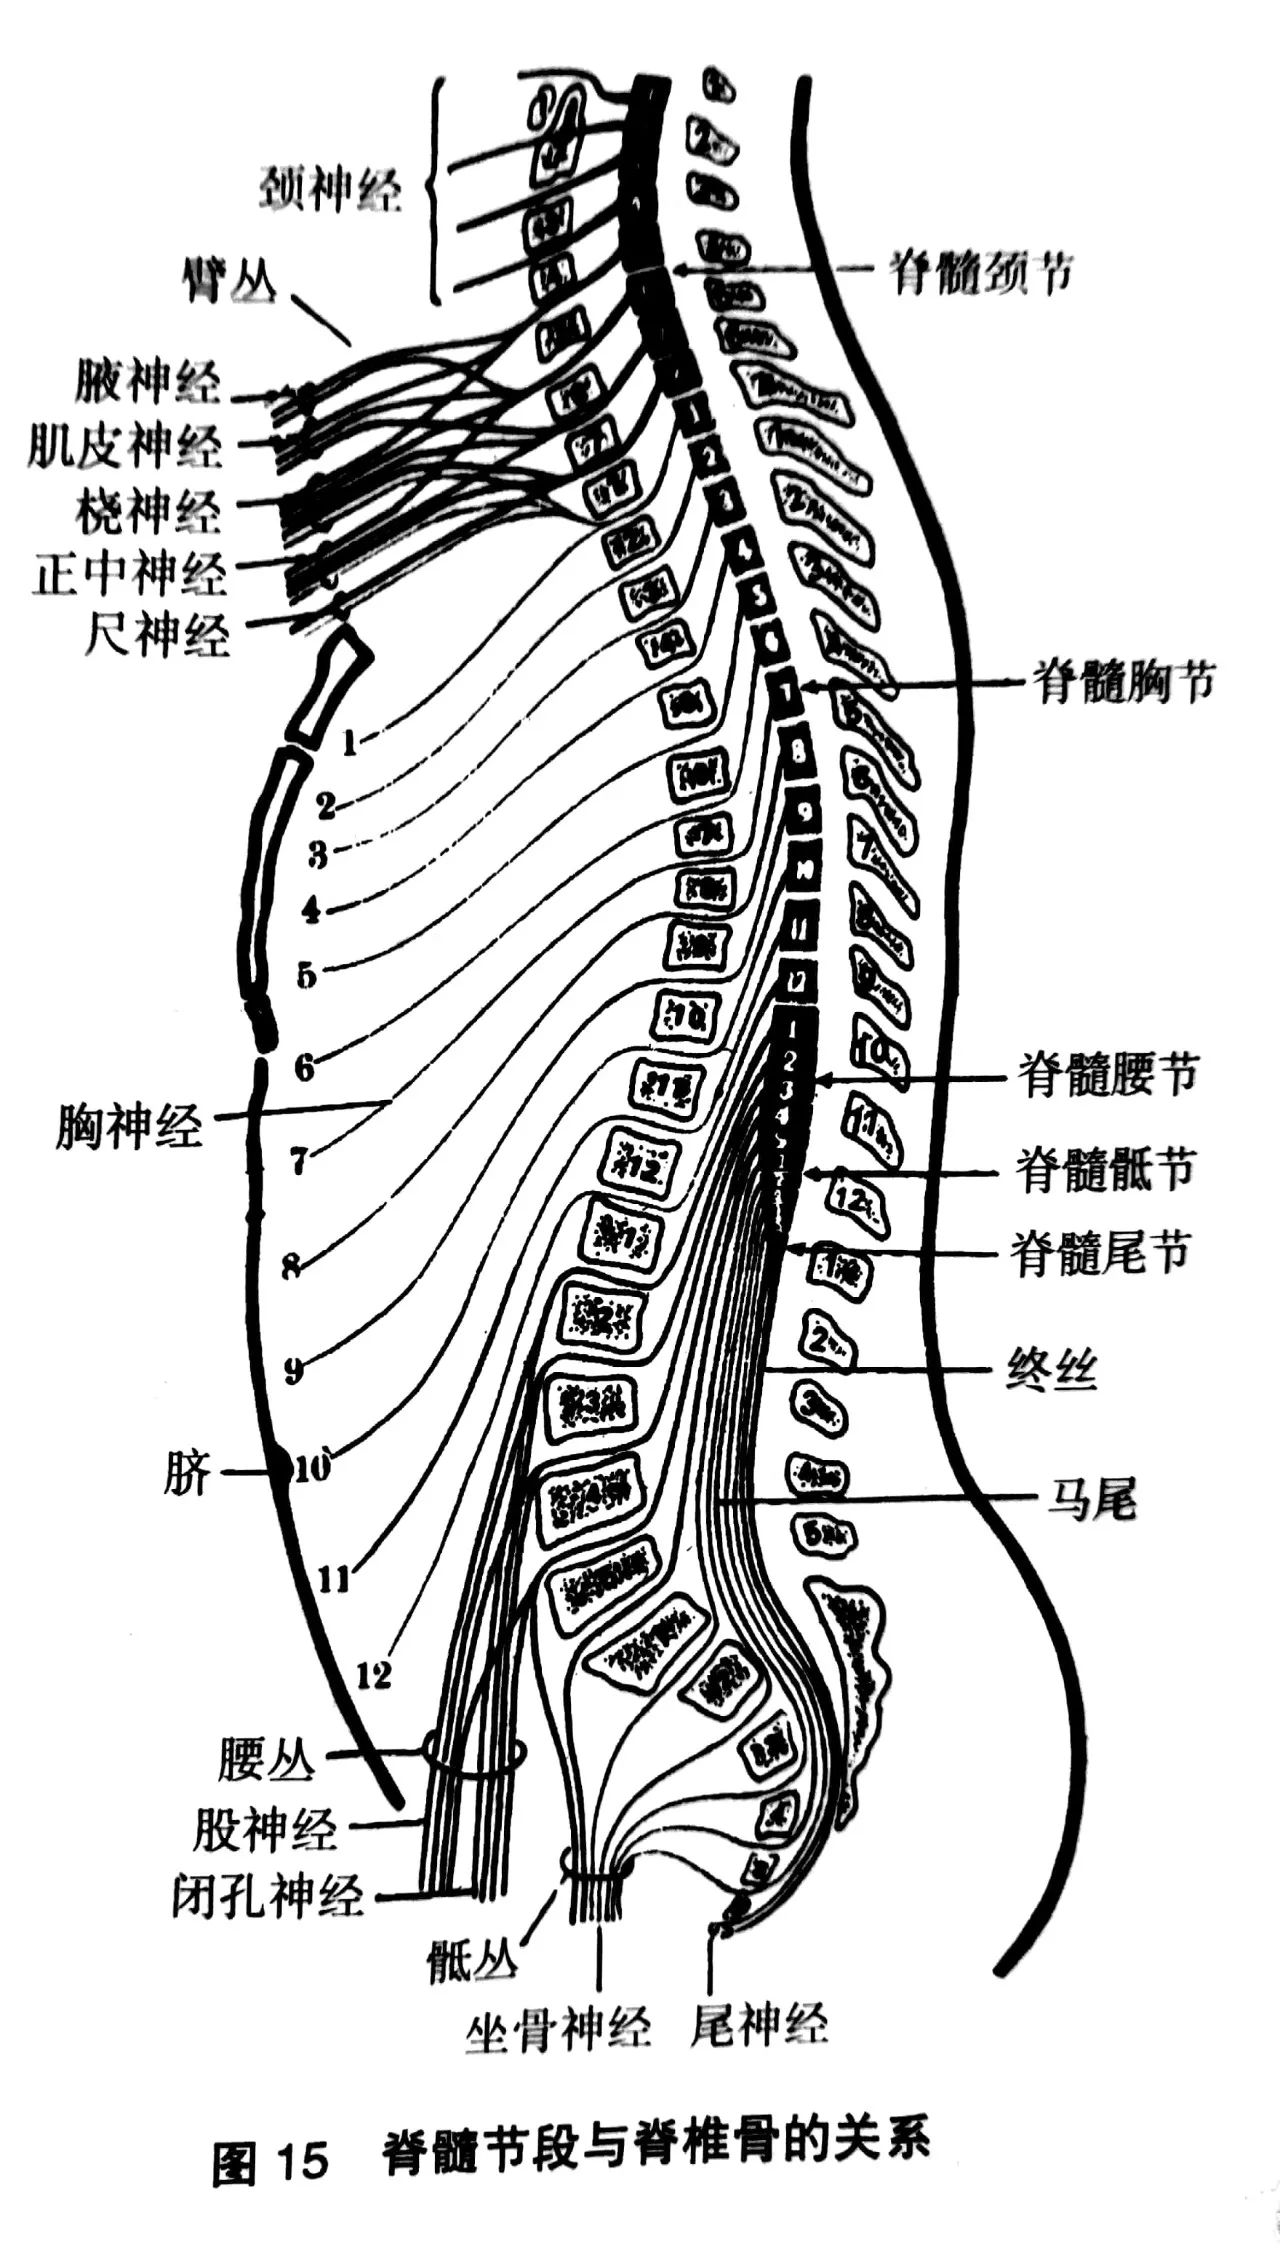 专业分享 | 关于脊髓的所有解剖学知识都在这了,快